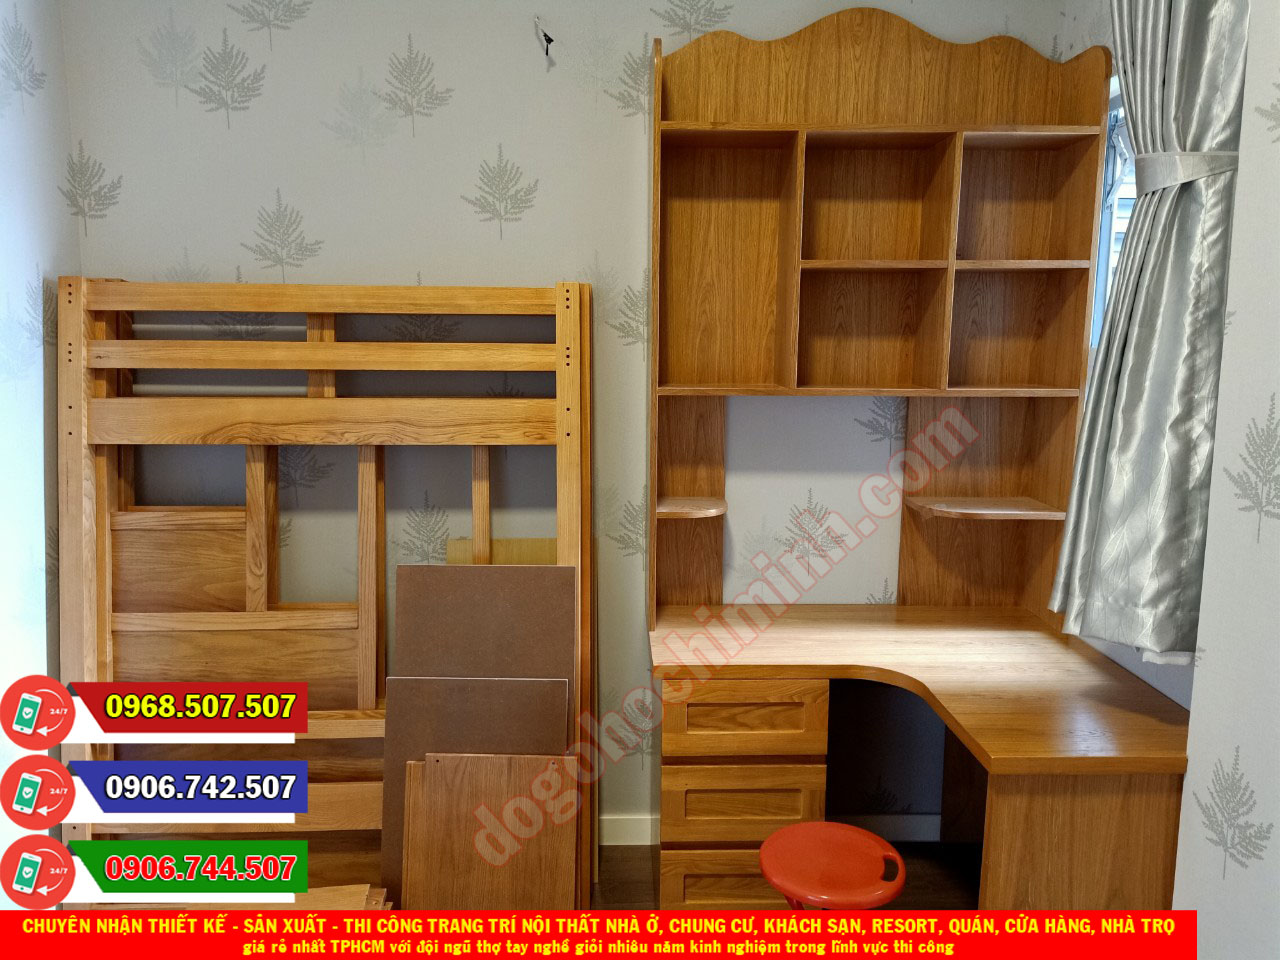 Thi công nội thất gỗ sồi giá rẻ tại nhà chị Hoàng Quận Thủ Đức TPHCM